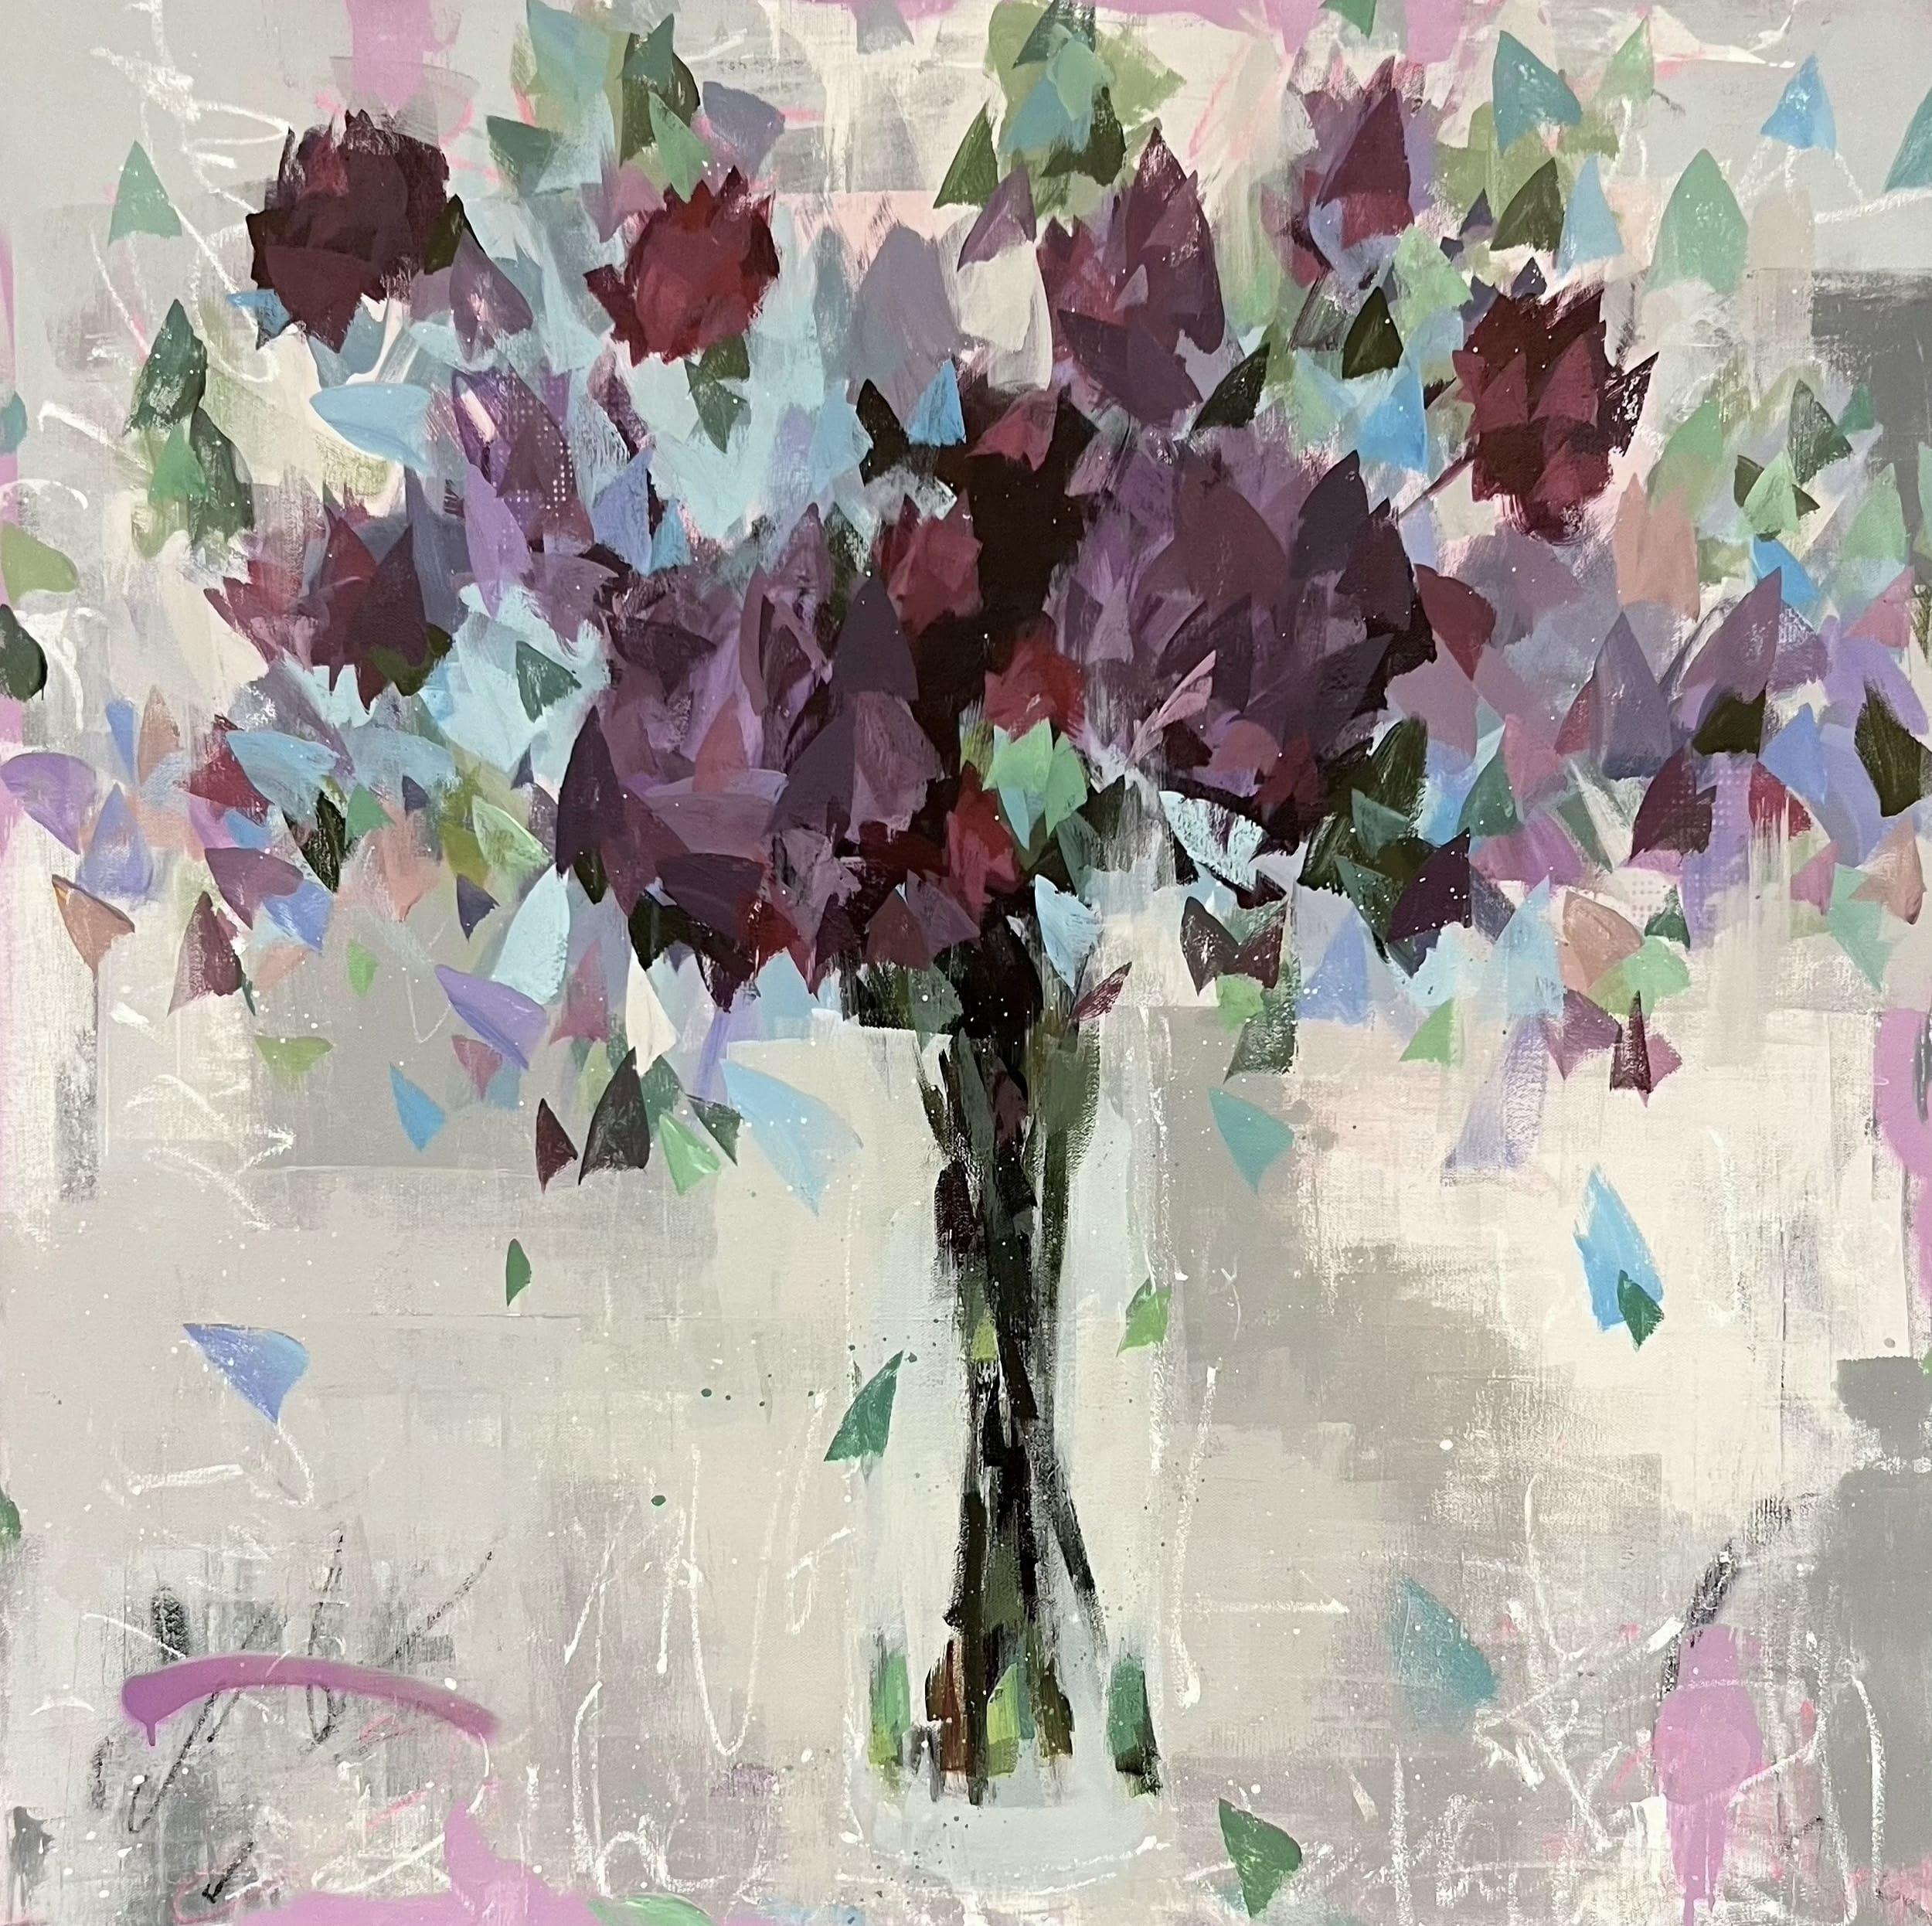 Unite - Peinture impressionniste abstraite de fleurs violettes